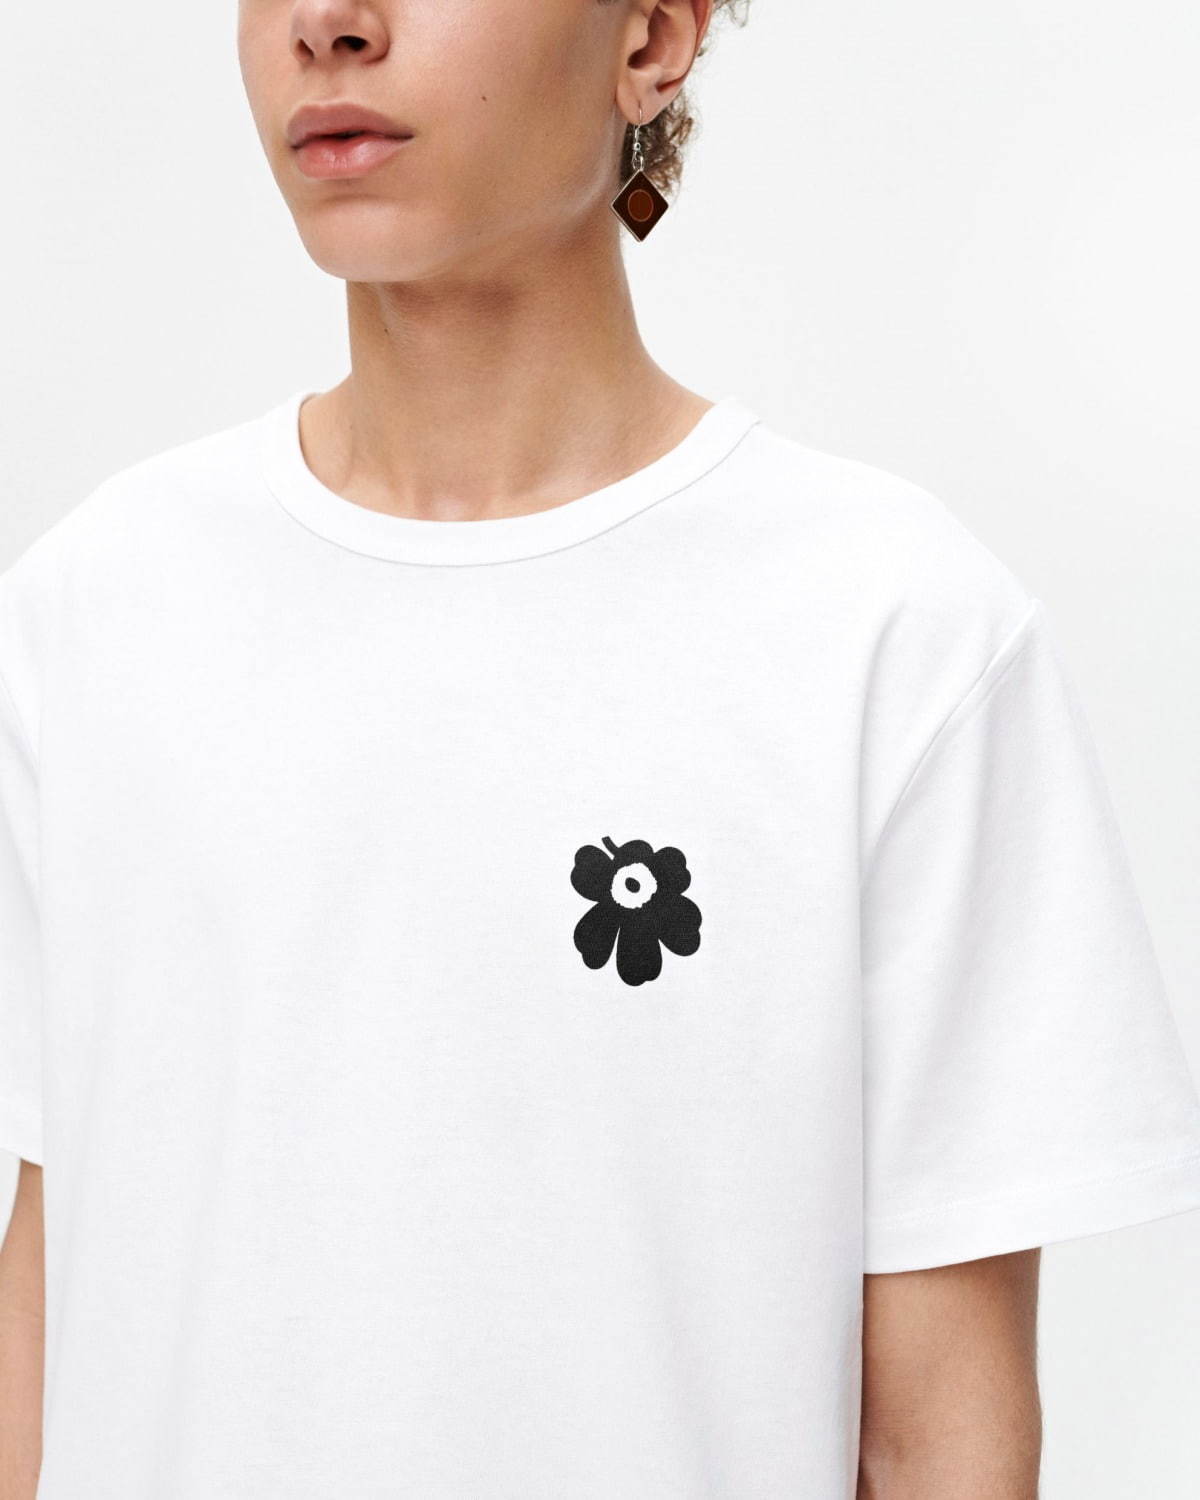 新品未開封品】marimekko Kioski 大阪限定Tシャツ | shop.spackdubai.com